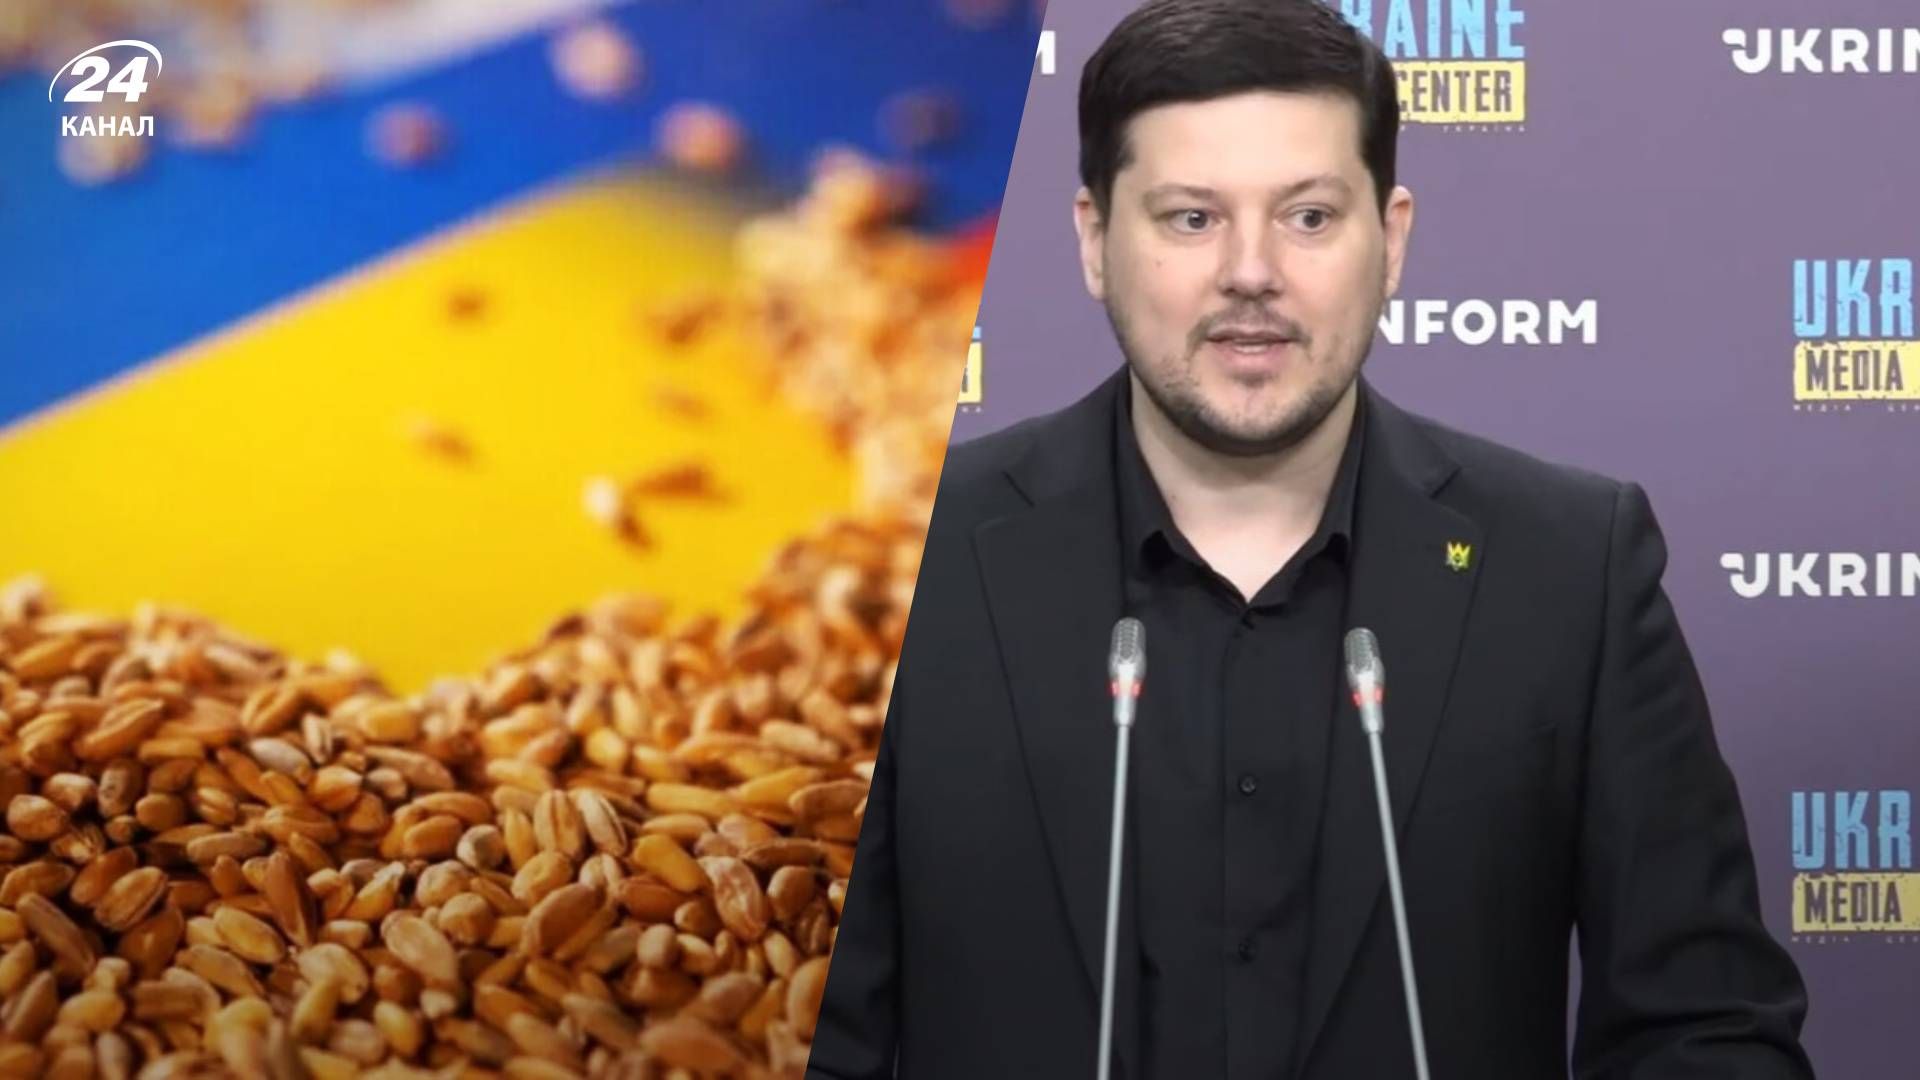 Стало известно сколько Украина потеряет на экспорте зерна - 24 Канал